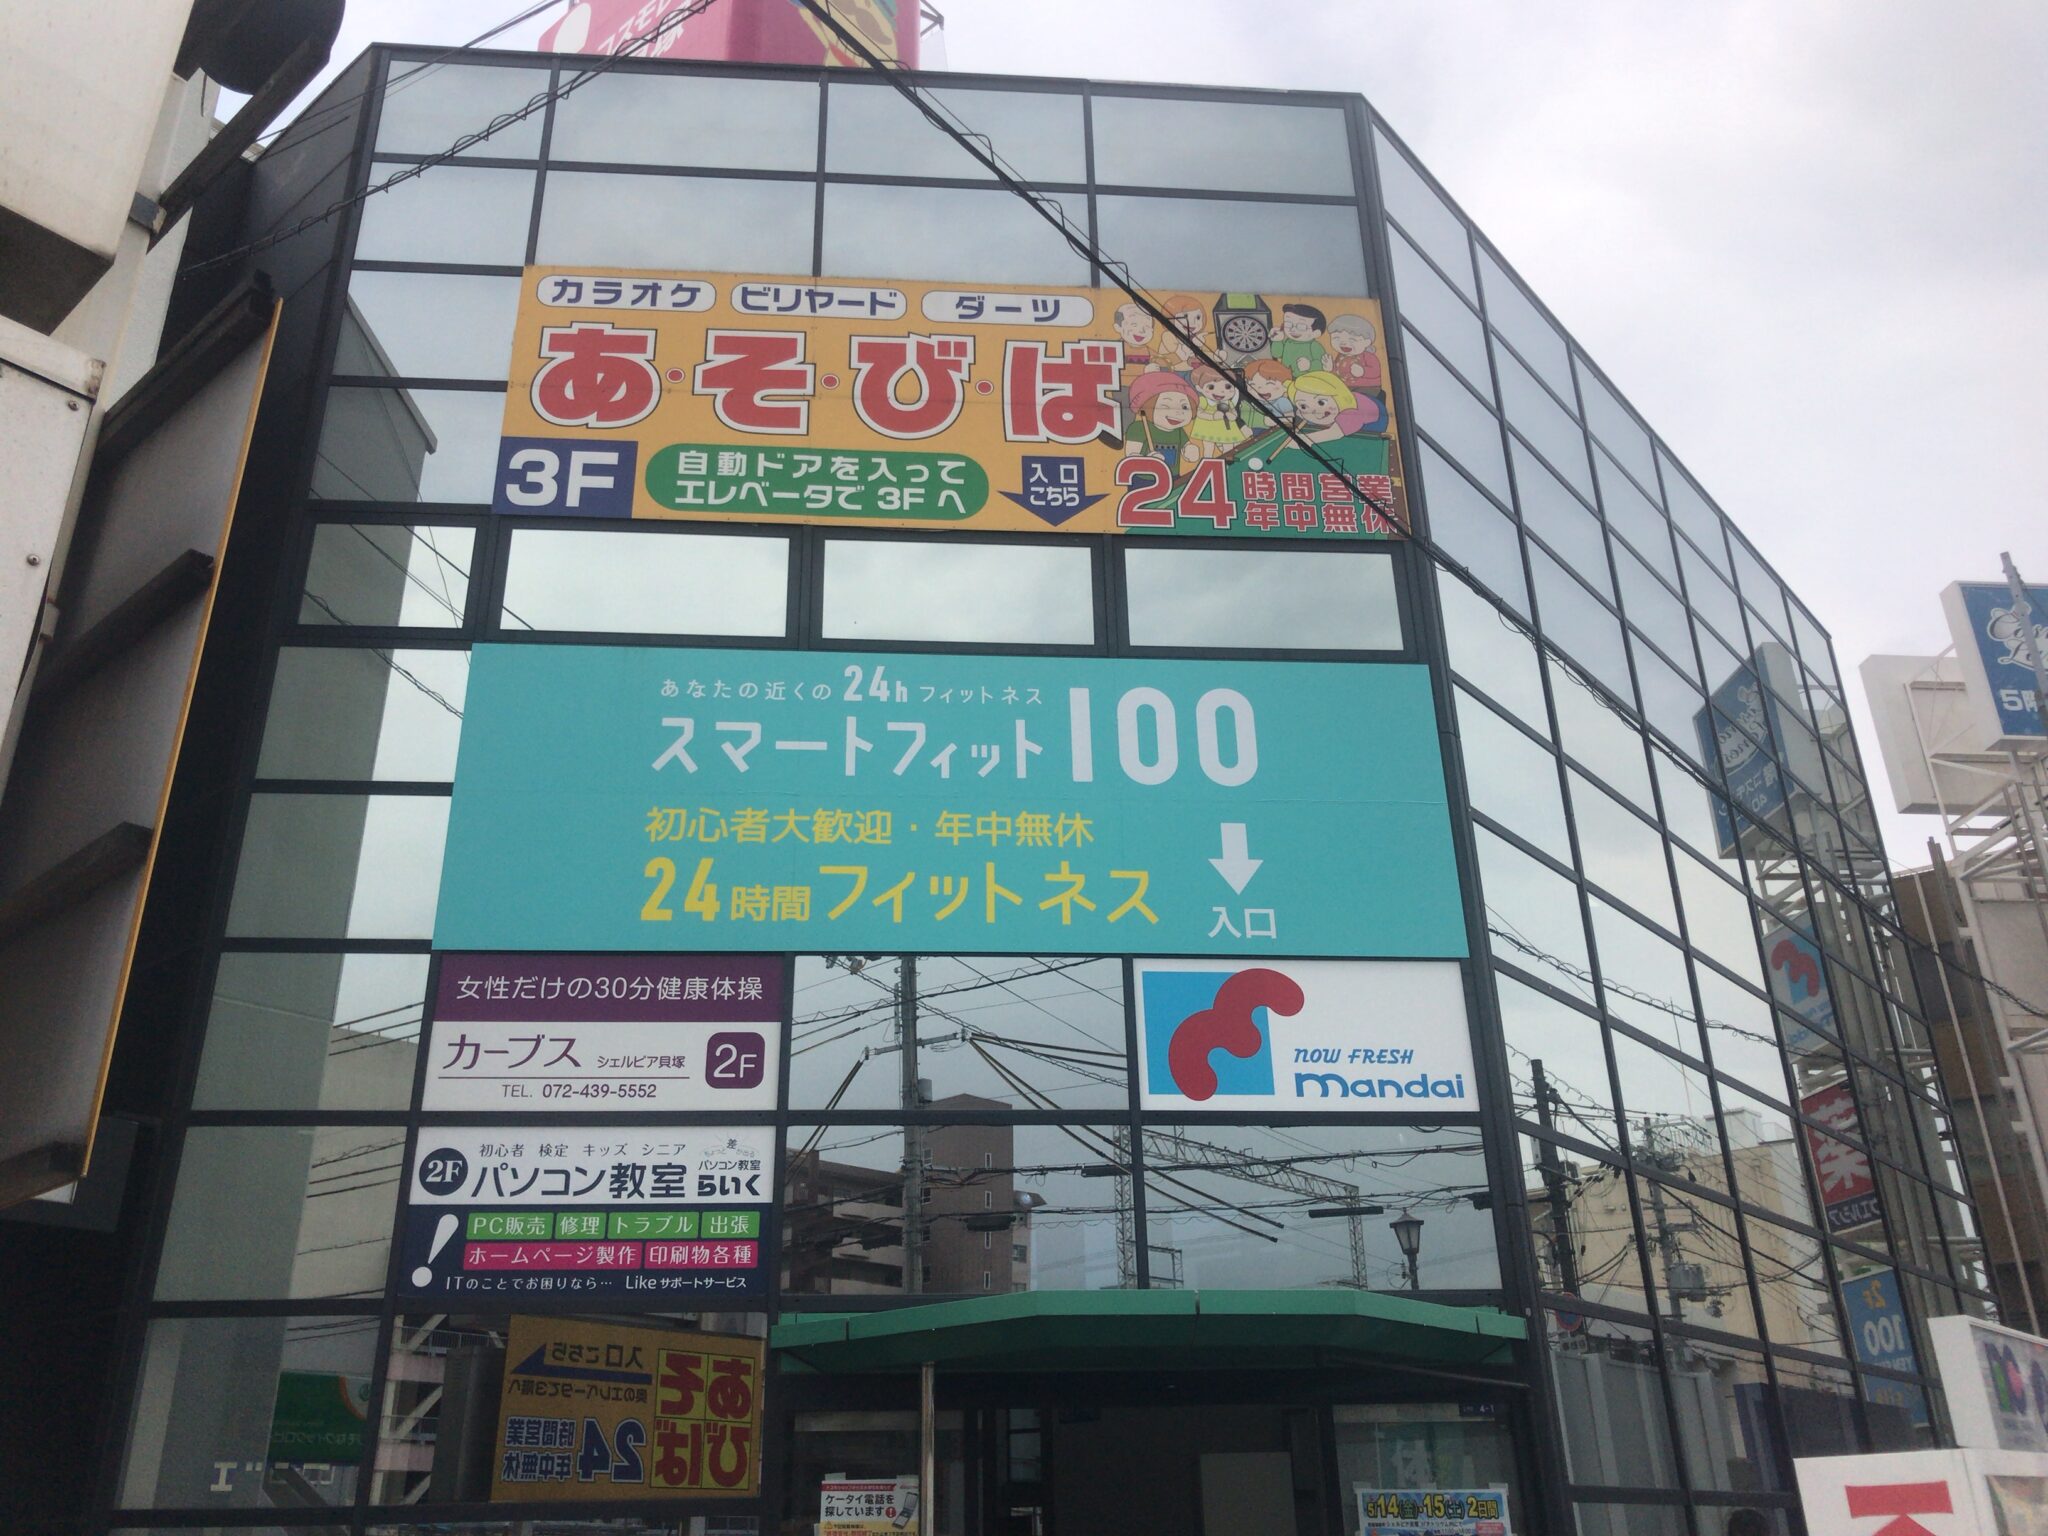 貝塚駅から徒歩3分 あそびば 貝塚店をレポート ヒマップ